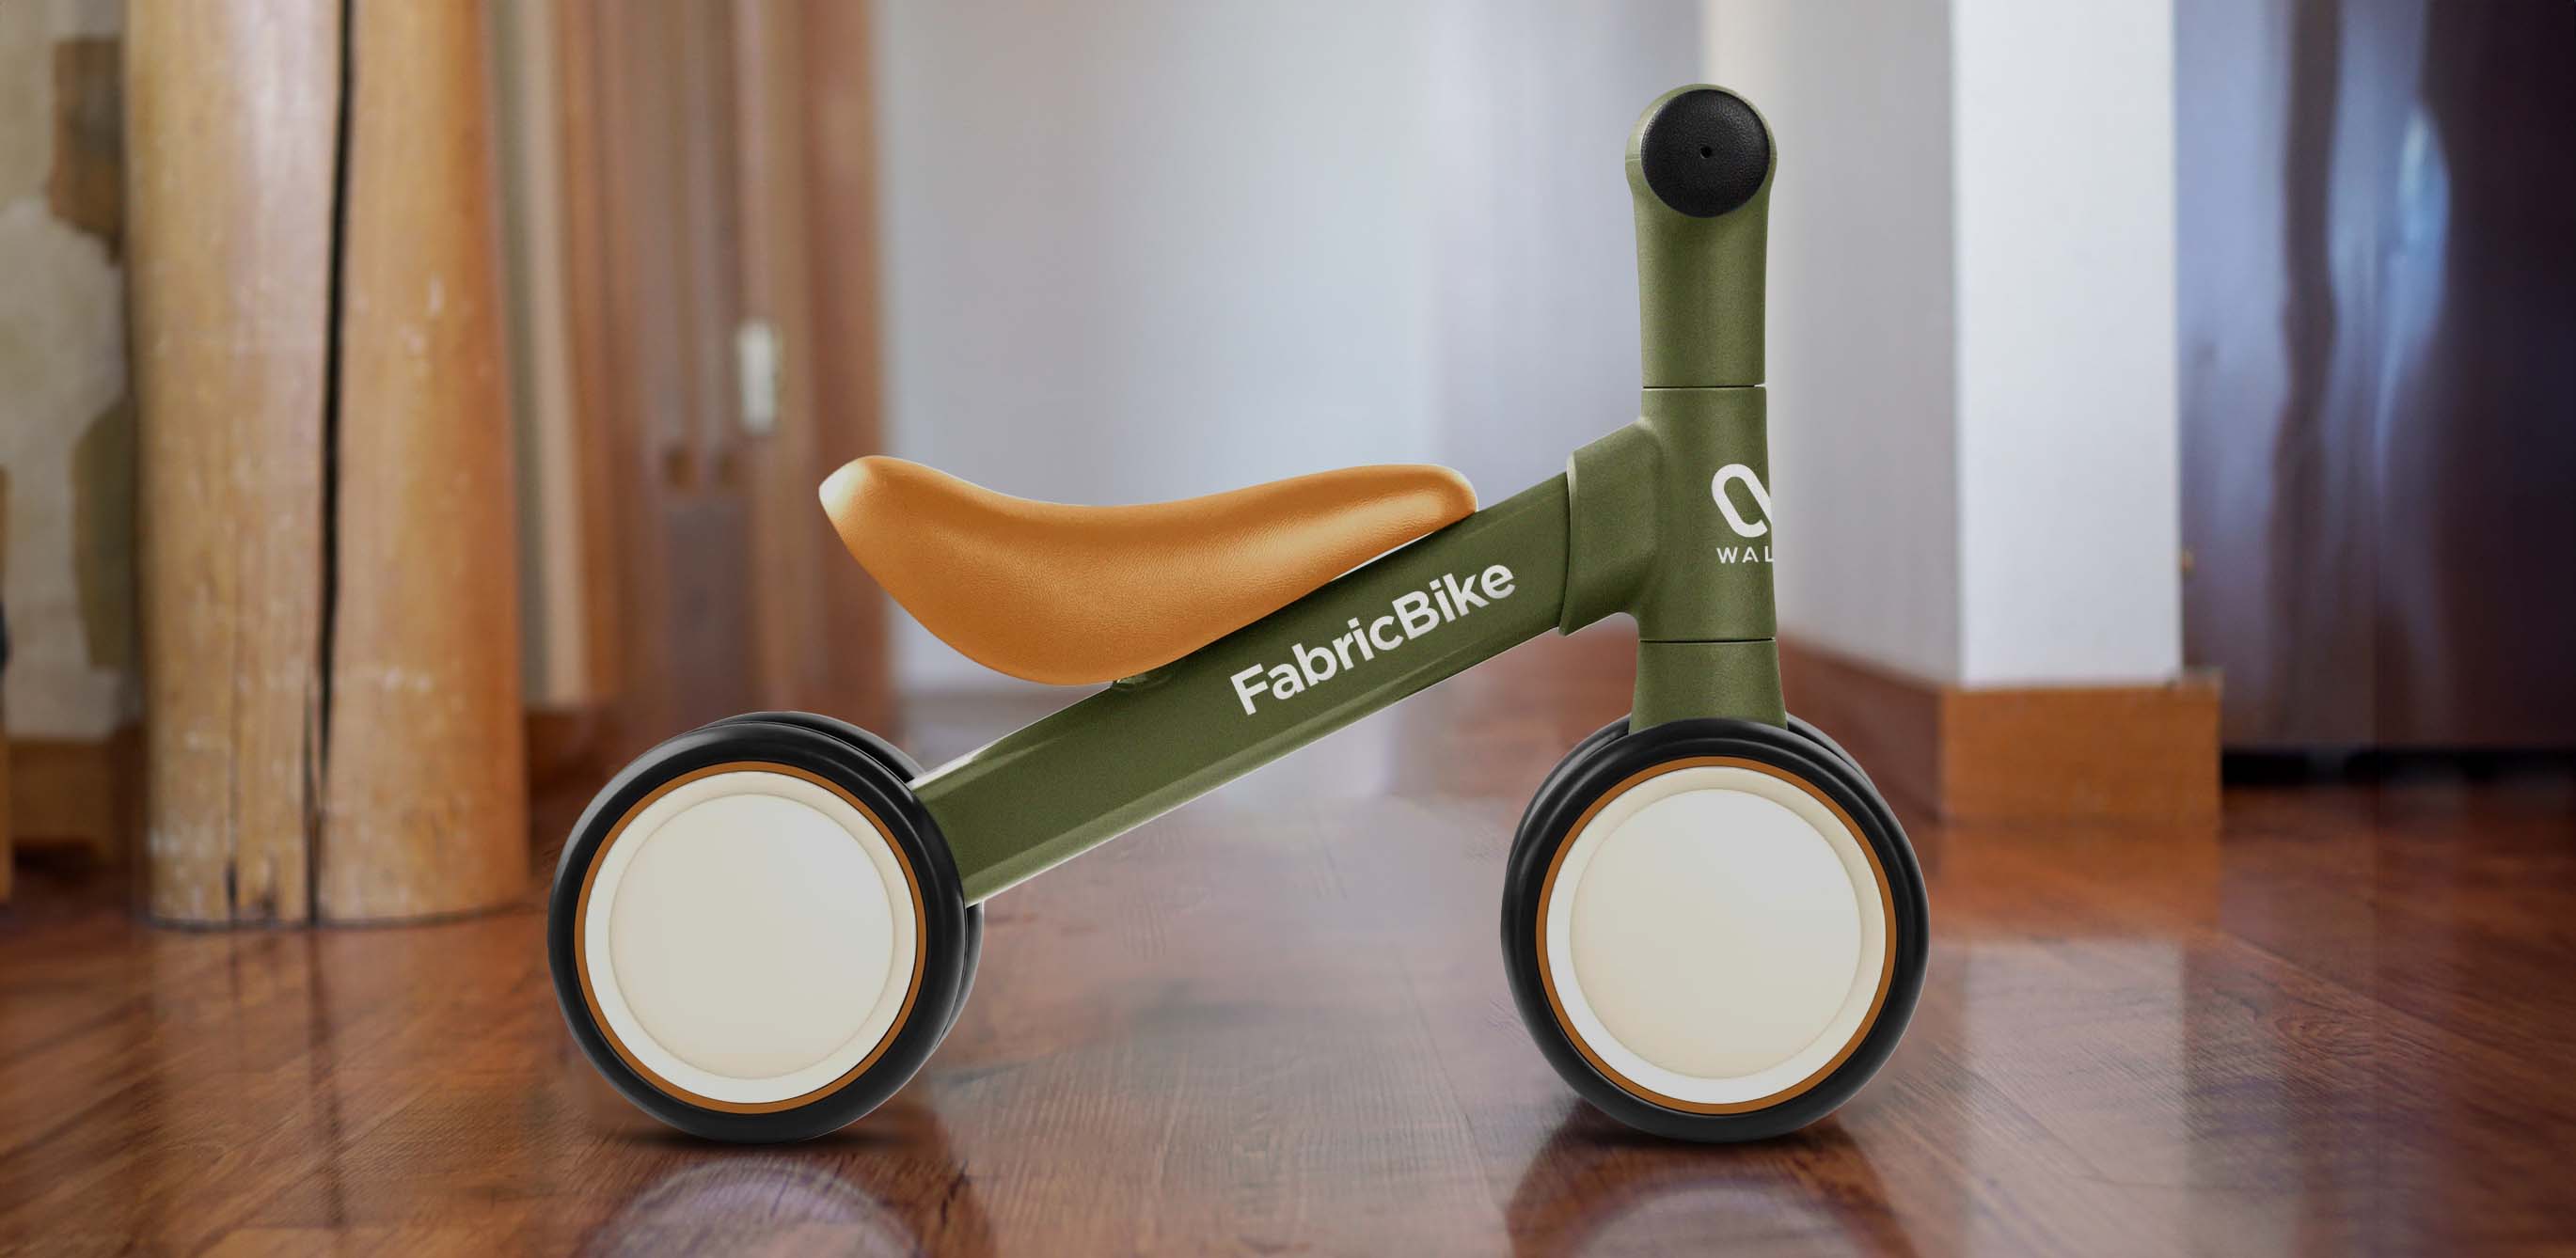 Bike for mini FabricBike